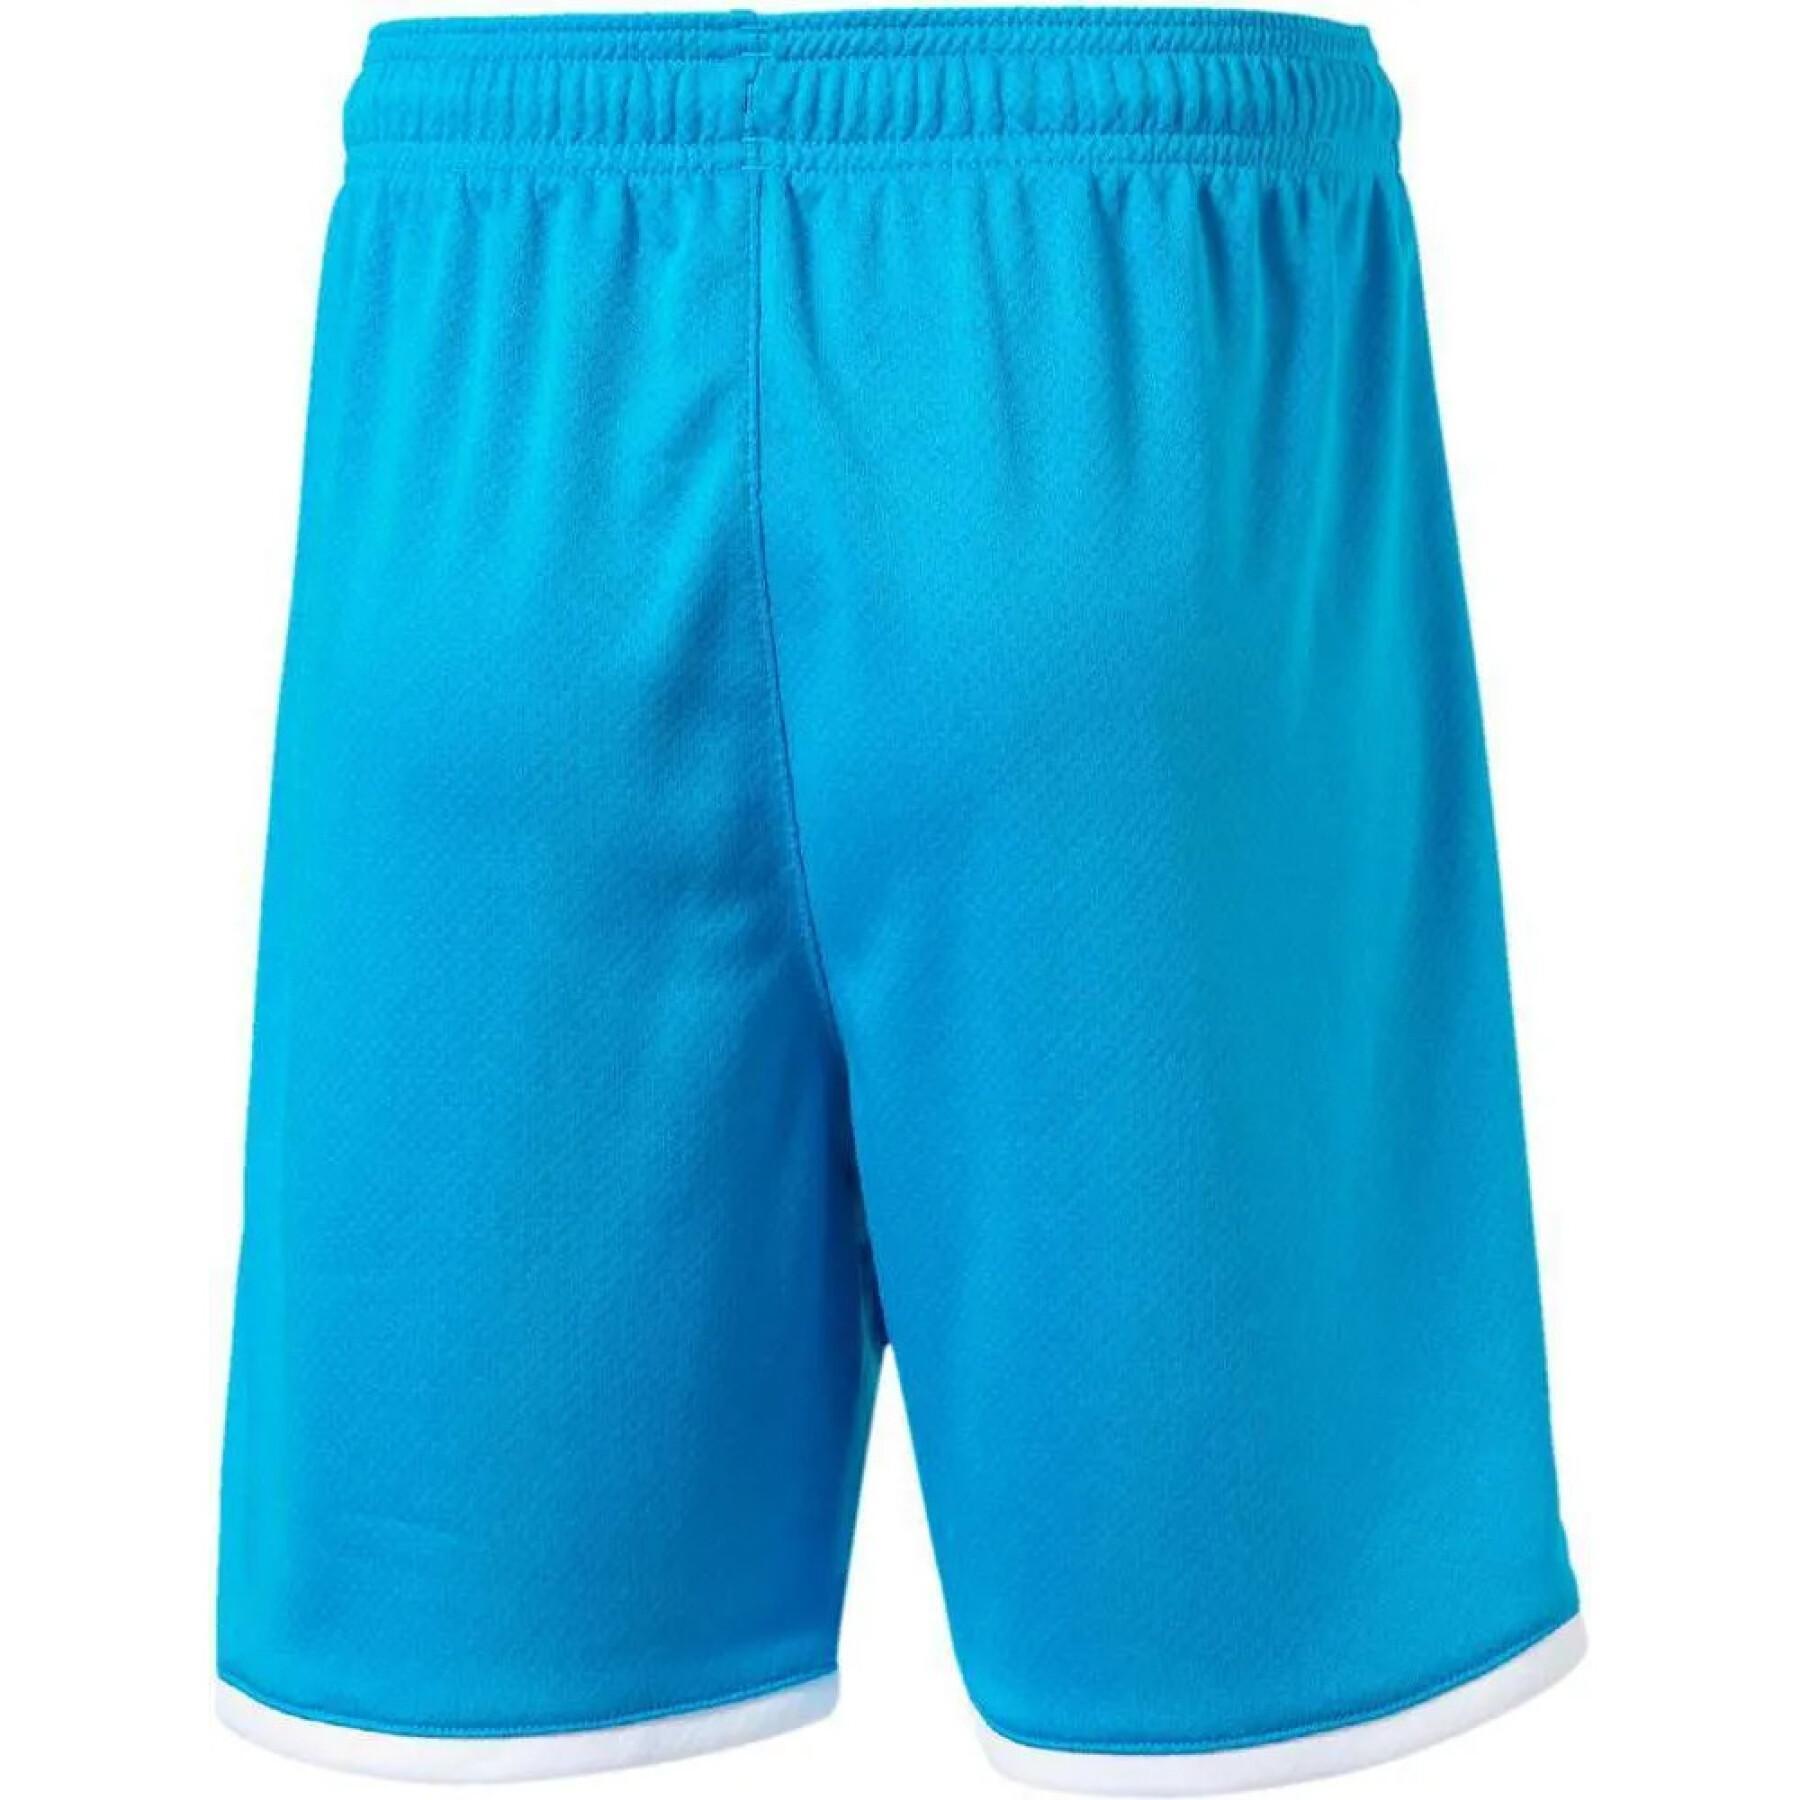 Kinder-Outdoor-Shorts OM 2019/20